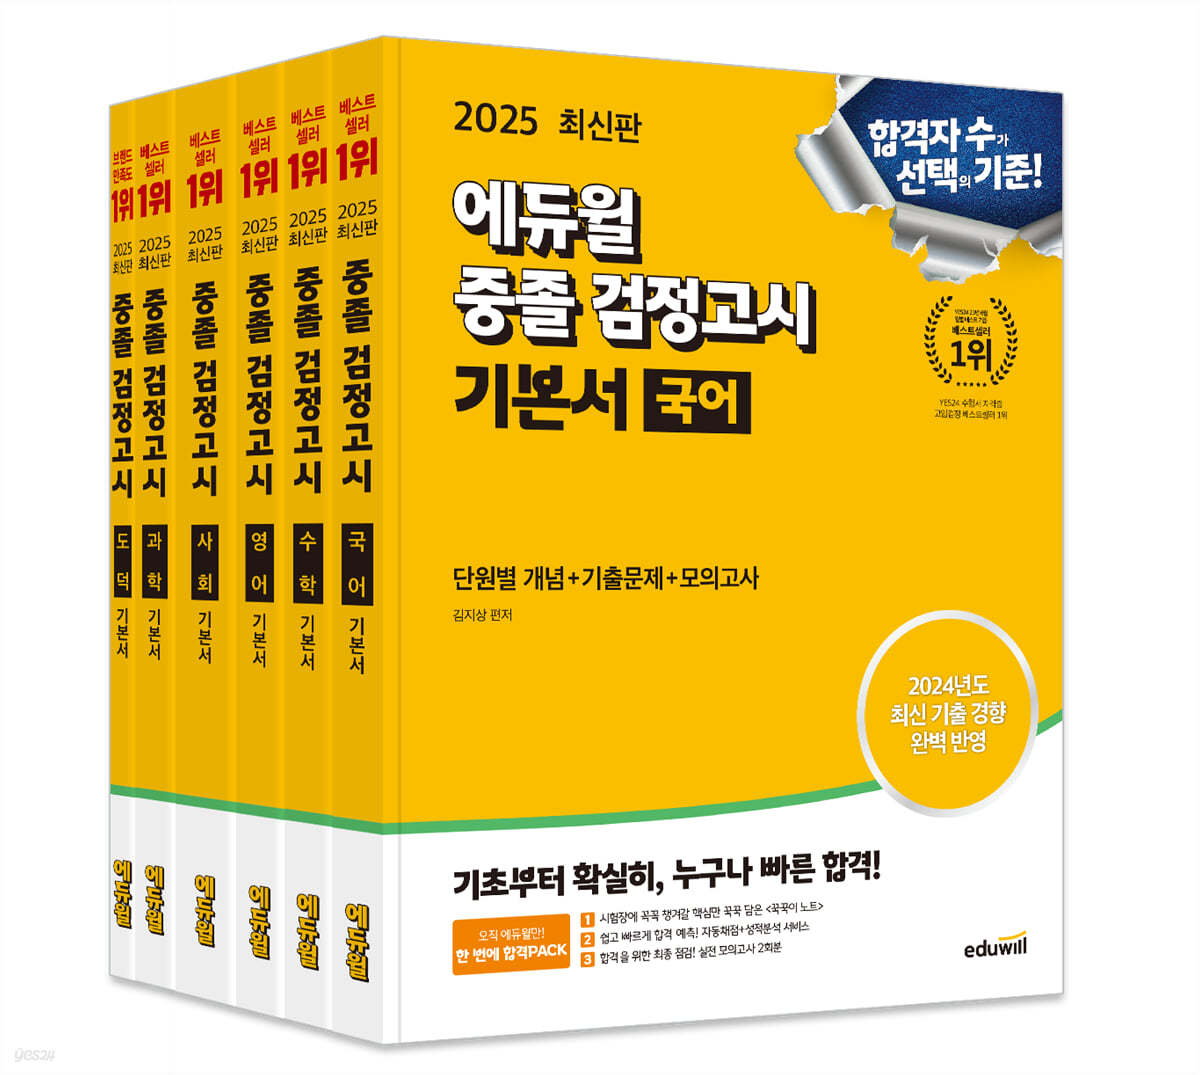 2025 에듀윌 중졸 검정고시 기본서 세트 (국어, 수학, 영어, 사회, 과학, 도덕)